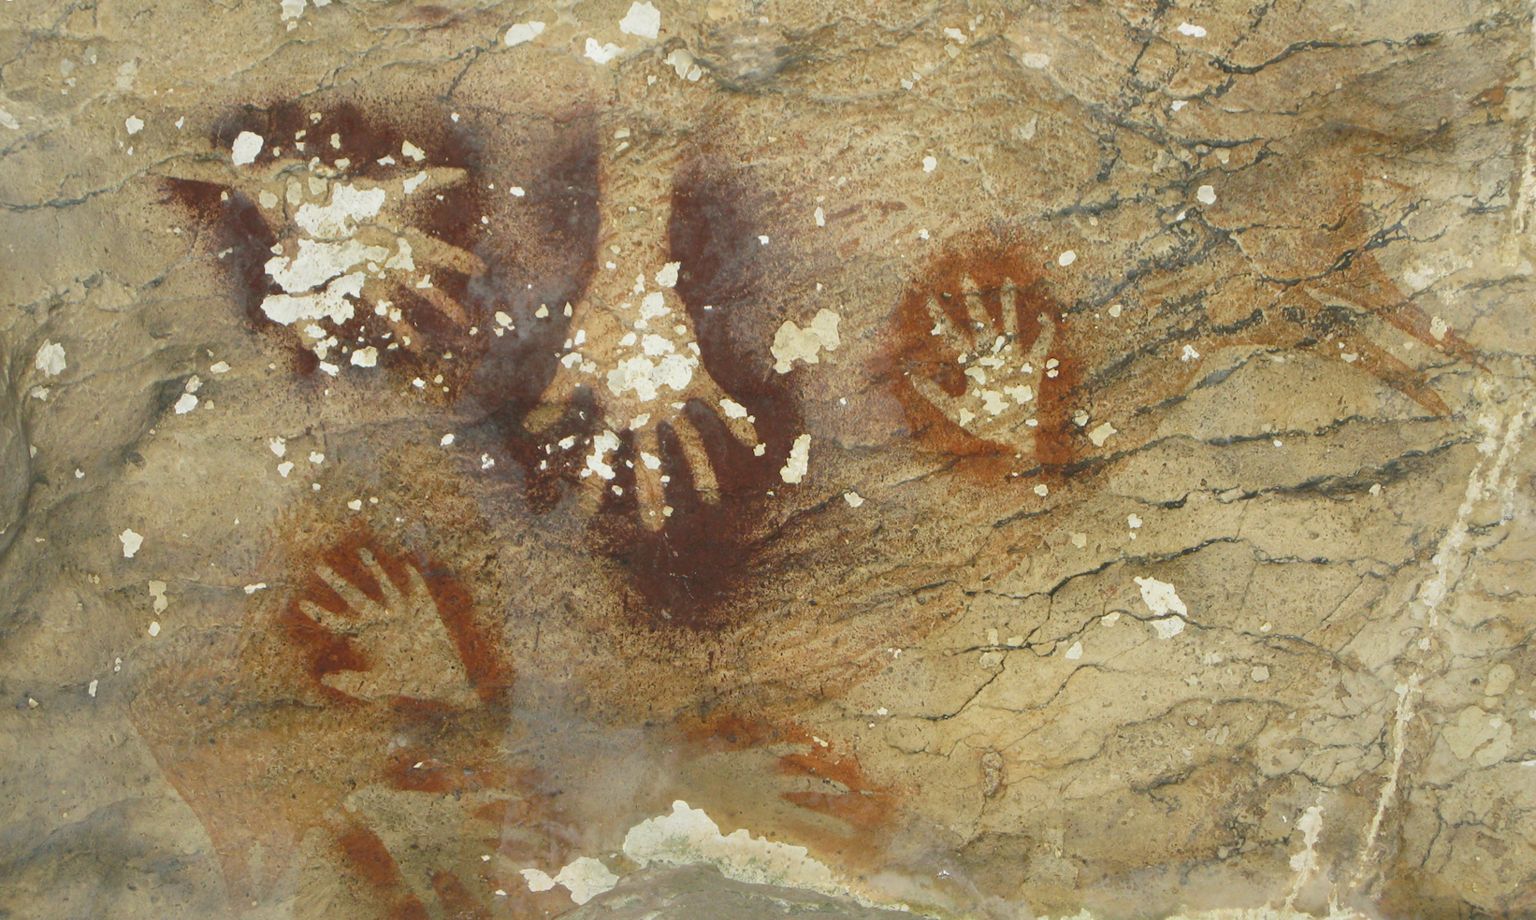 Hand paintings in Sumpang Bita cave, Indonesia